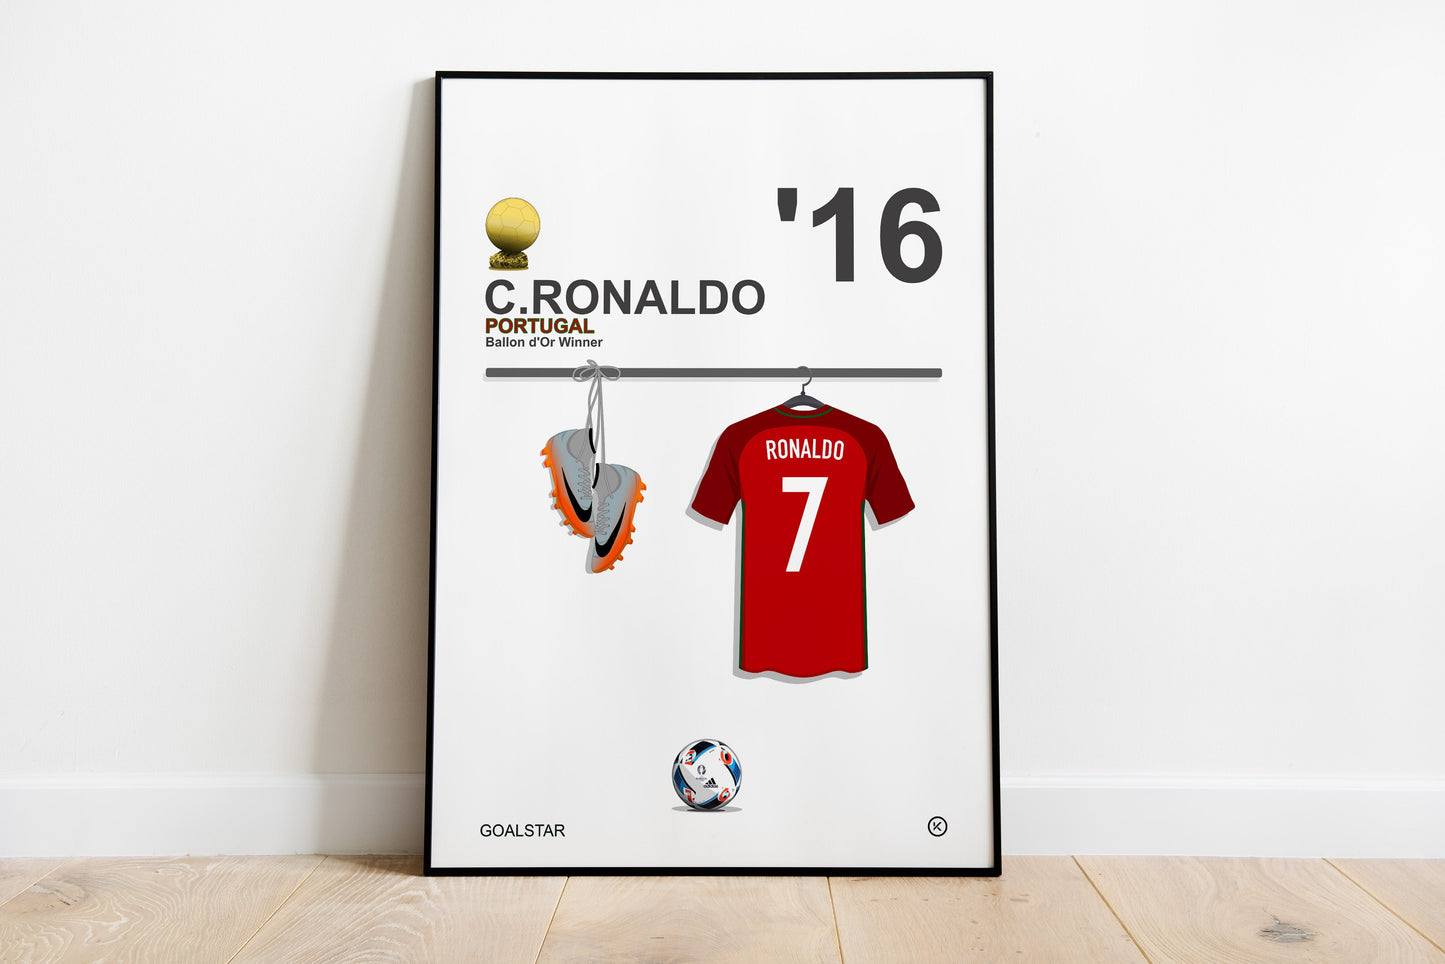 Cristiano Ronaldo - Ballon d'Or Winner 2016